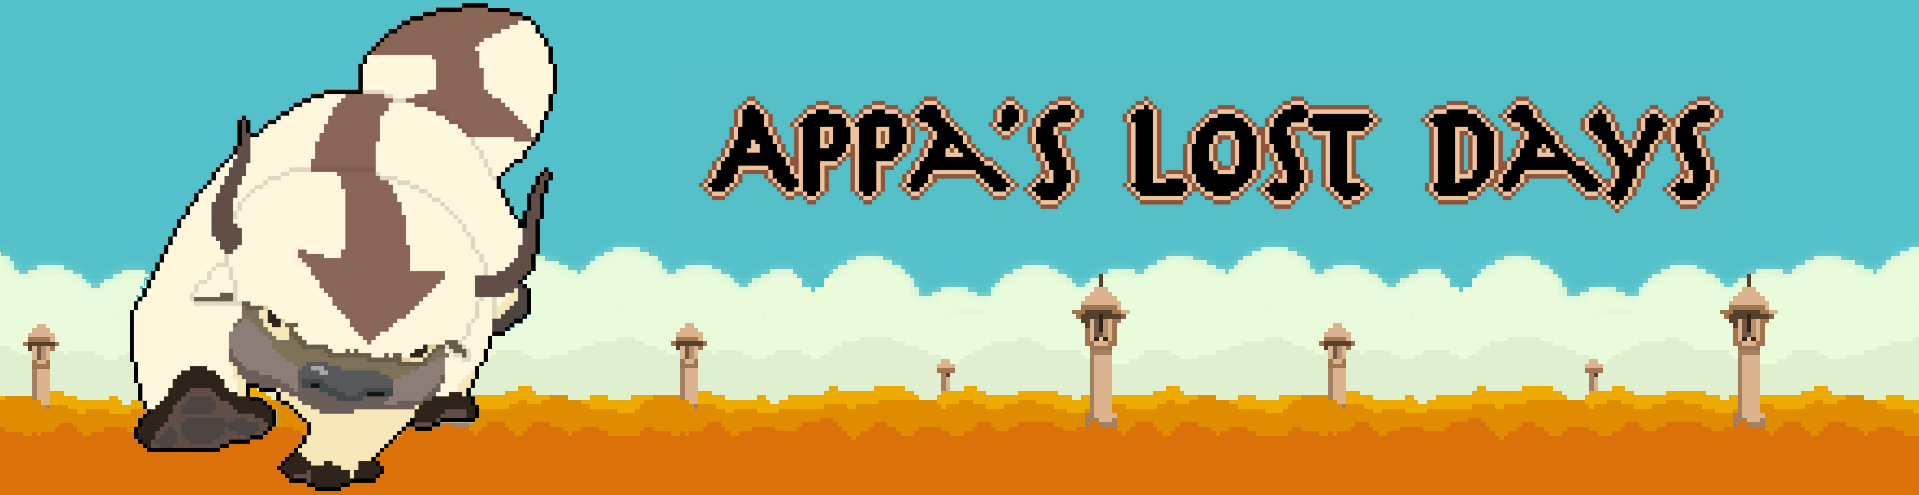 Appa's Lost Days